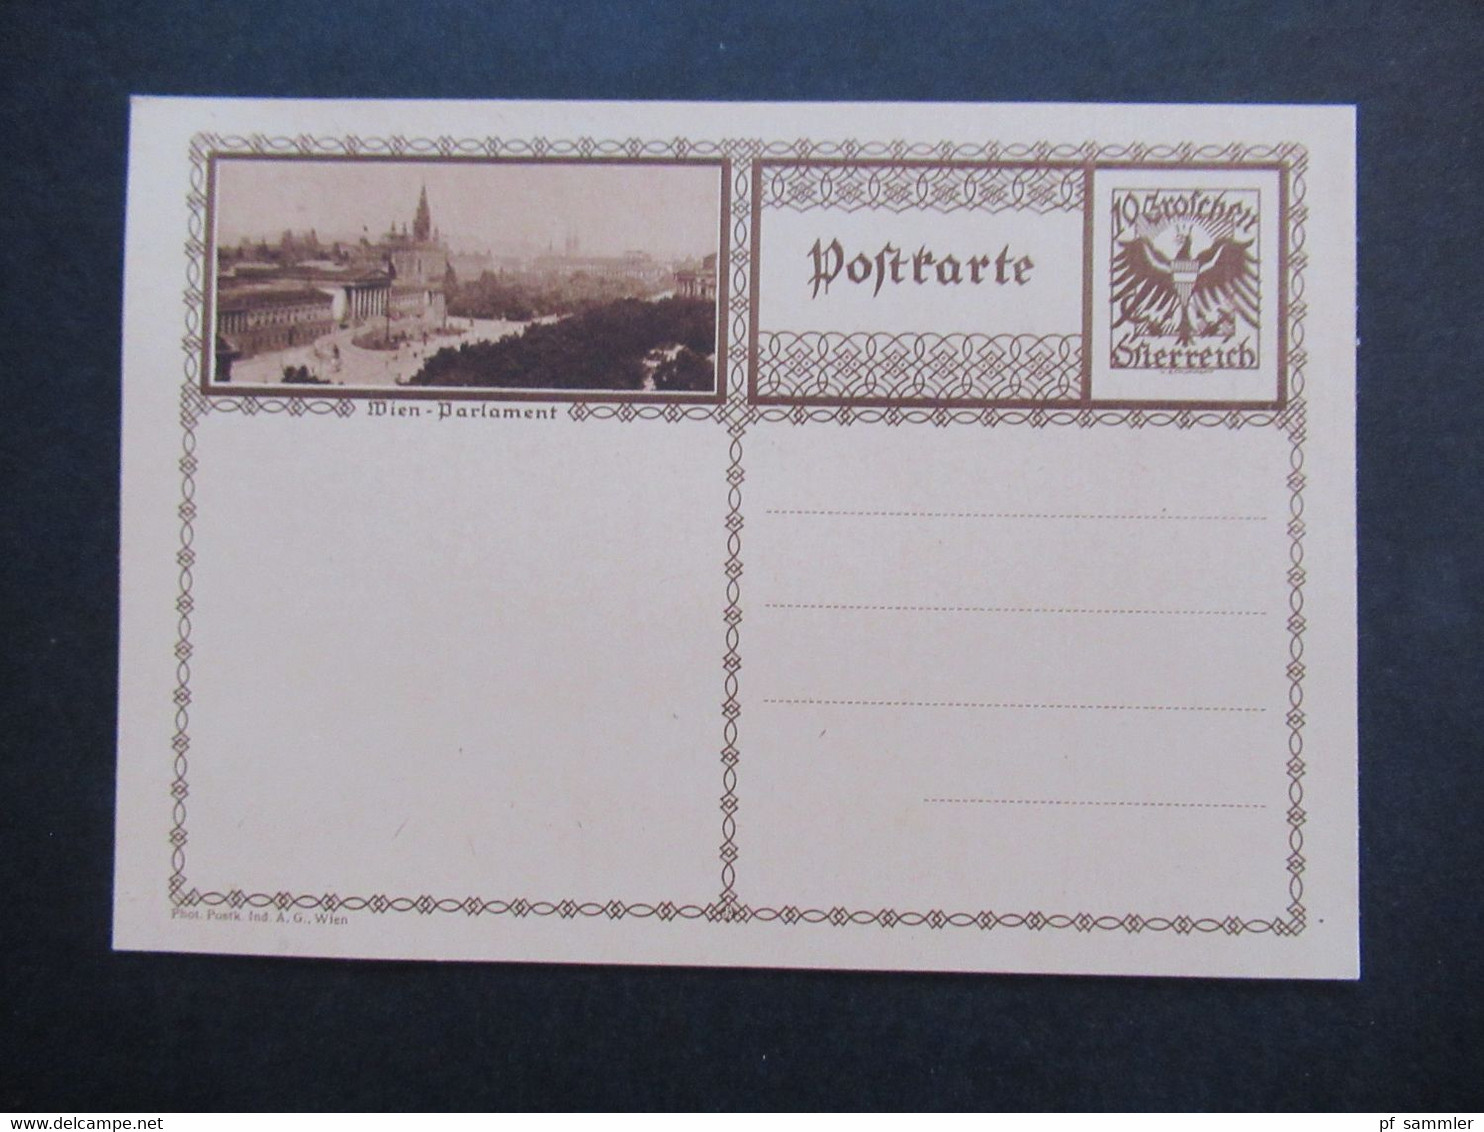 Österreich 1927 / 30 GA Bildpostkarte P 278 verschiedene Farben! mit Bild Wien Parlament / Parlamentsgebäude ungebraucht